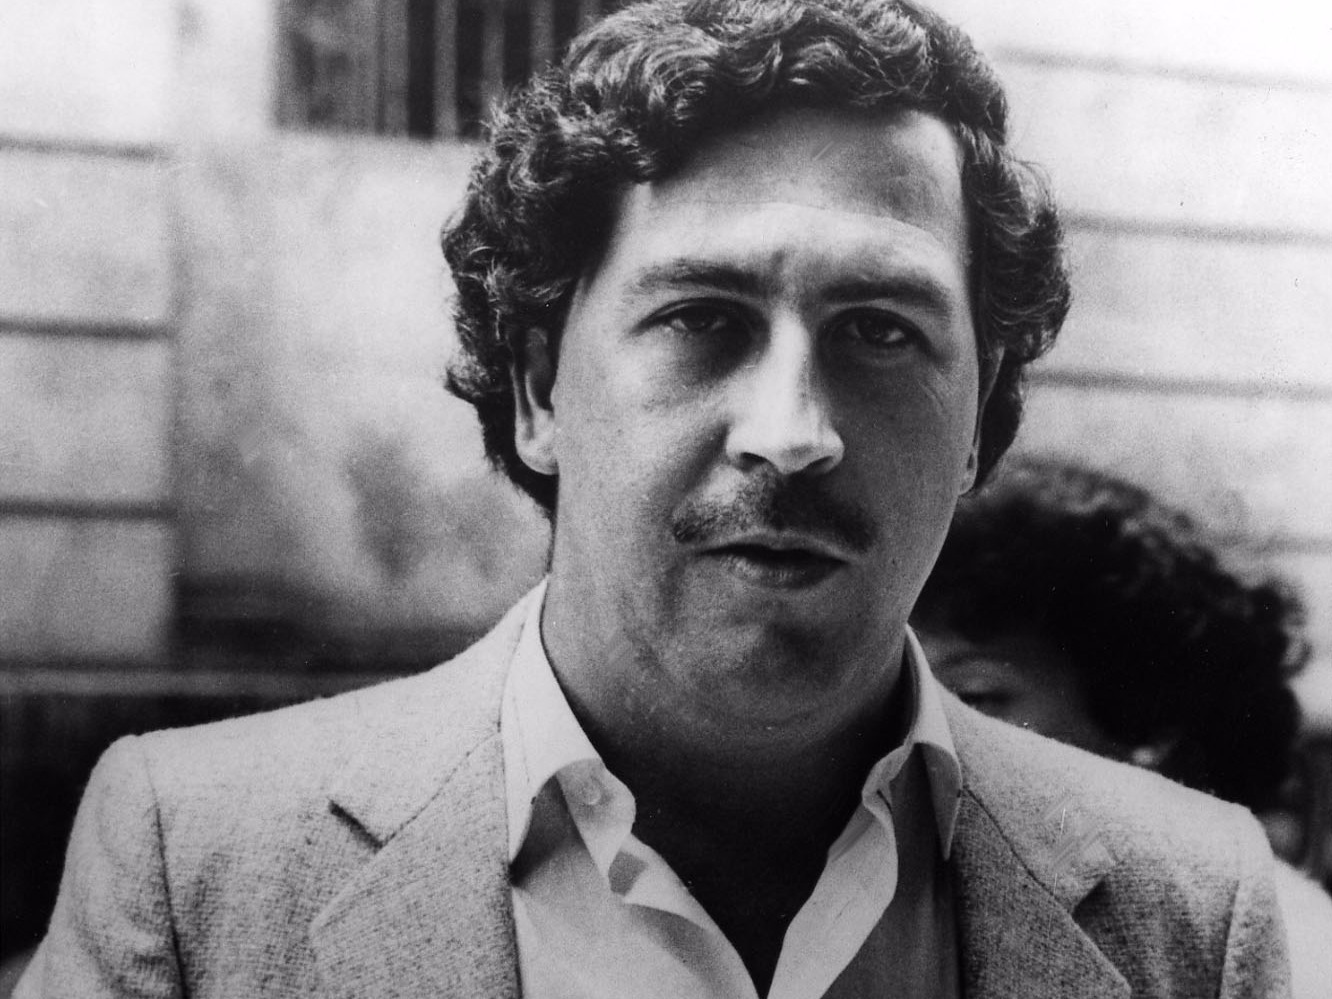  El día que murió Pablo Escobar, el narco más buscado de todos